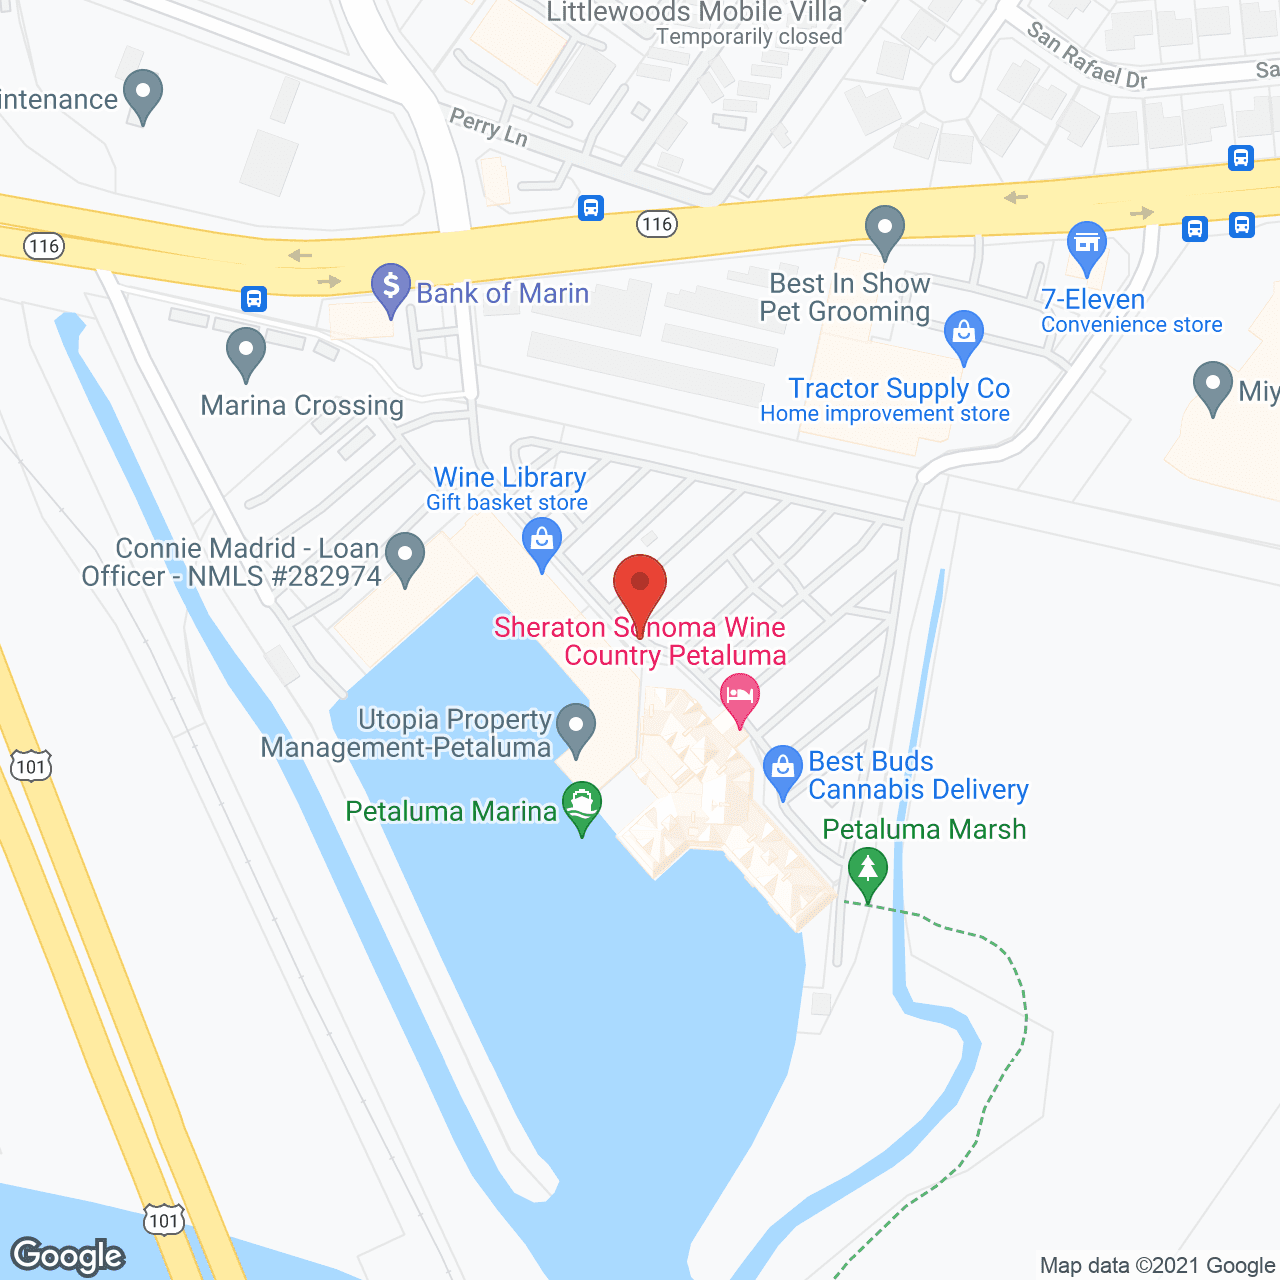 AccentCare of Petaluma in google map